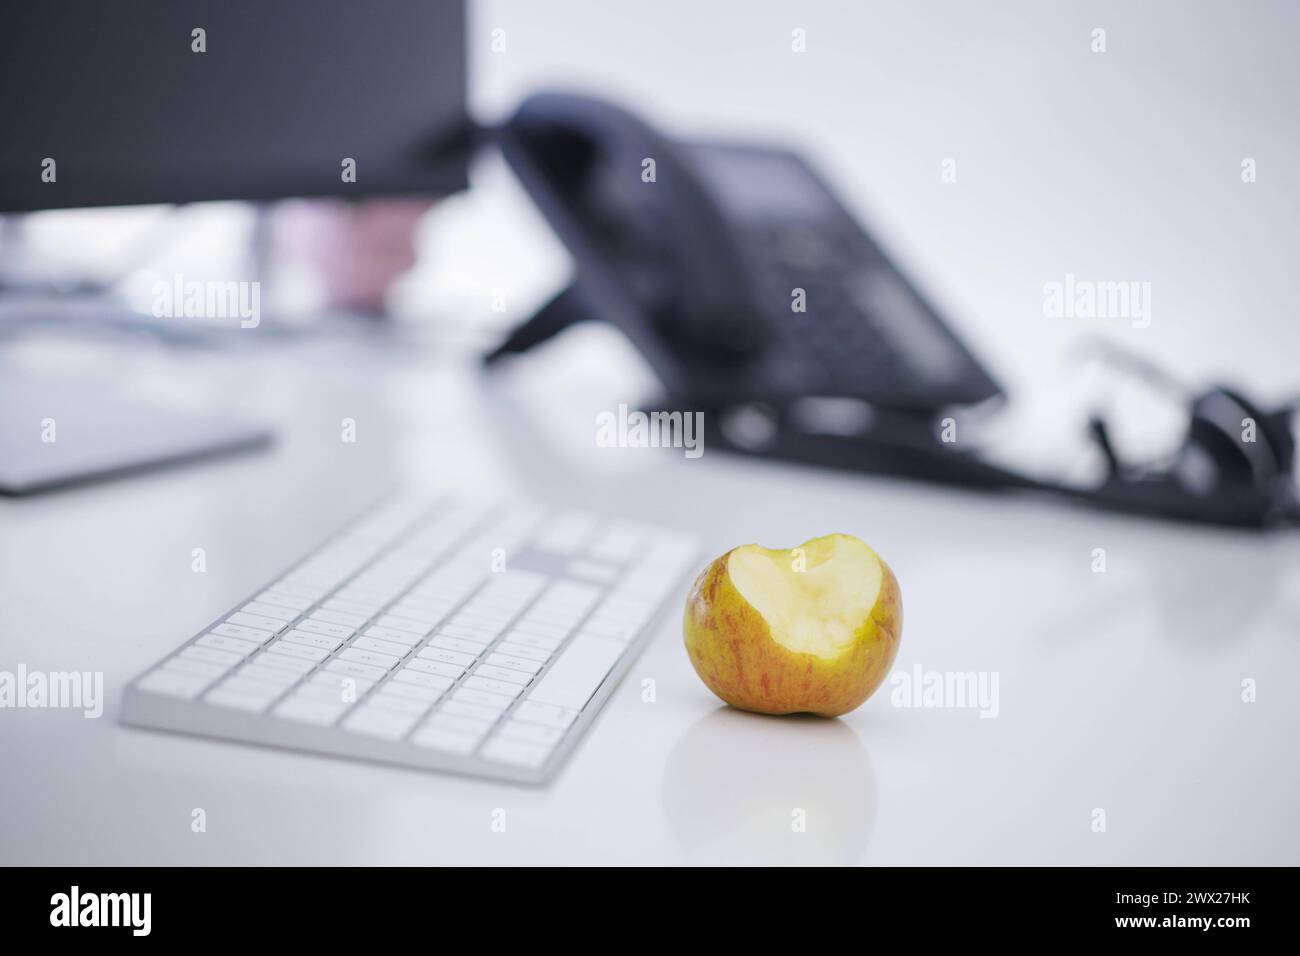 Symbolfoto zum Thema öÄÃ Gesunde Ernaehrung am Arbeitsplatz öÄÃ . Ein Apfel liegt neben einer Tastatur auf einem Schreibtisch im Buero. Berlin, 27.03. Stock Photo